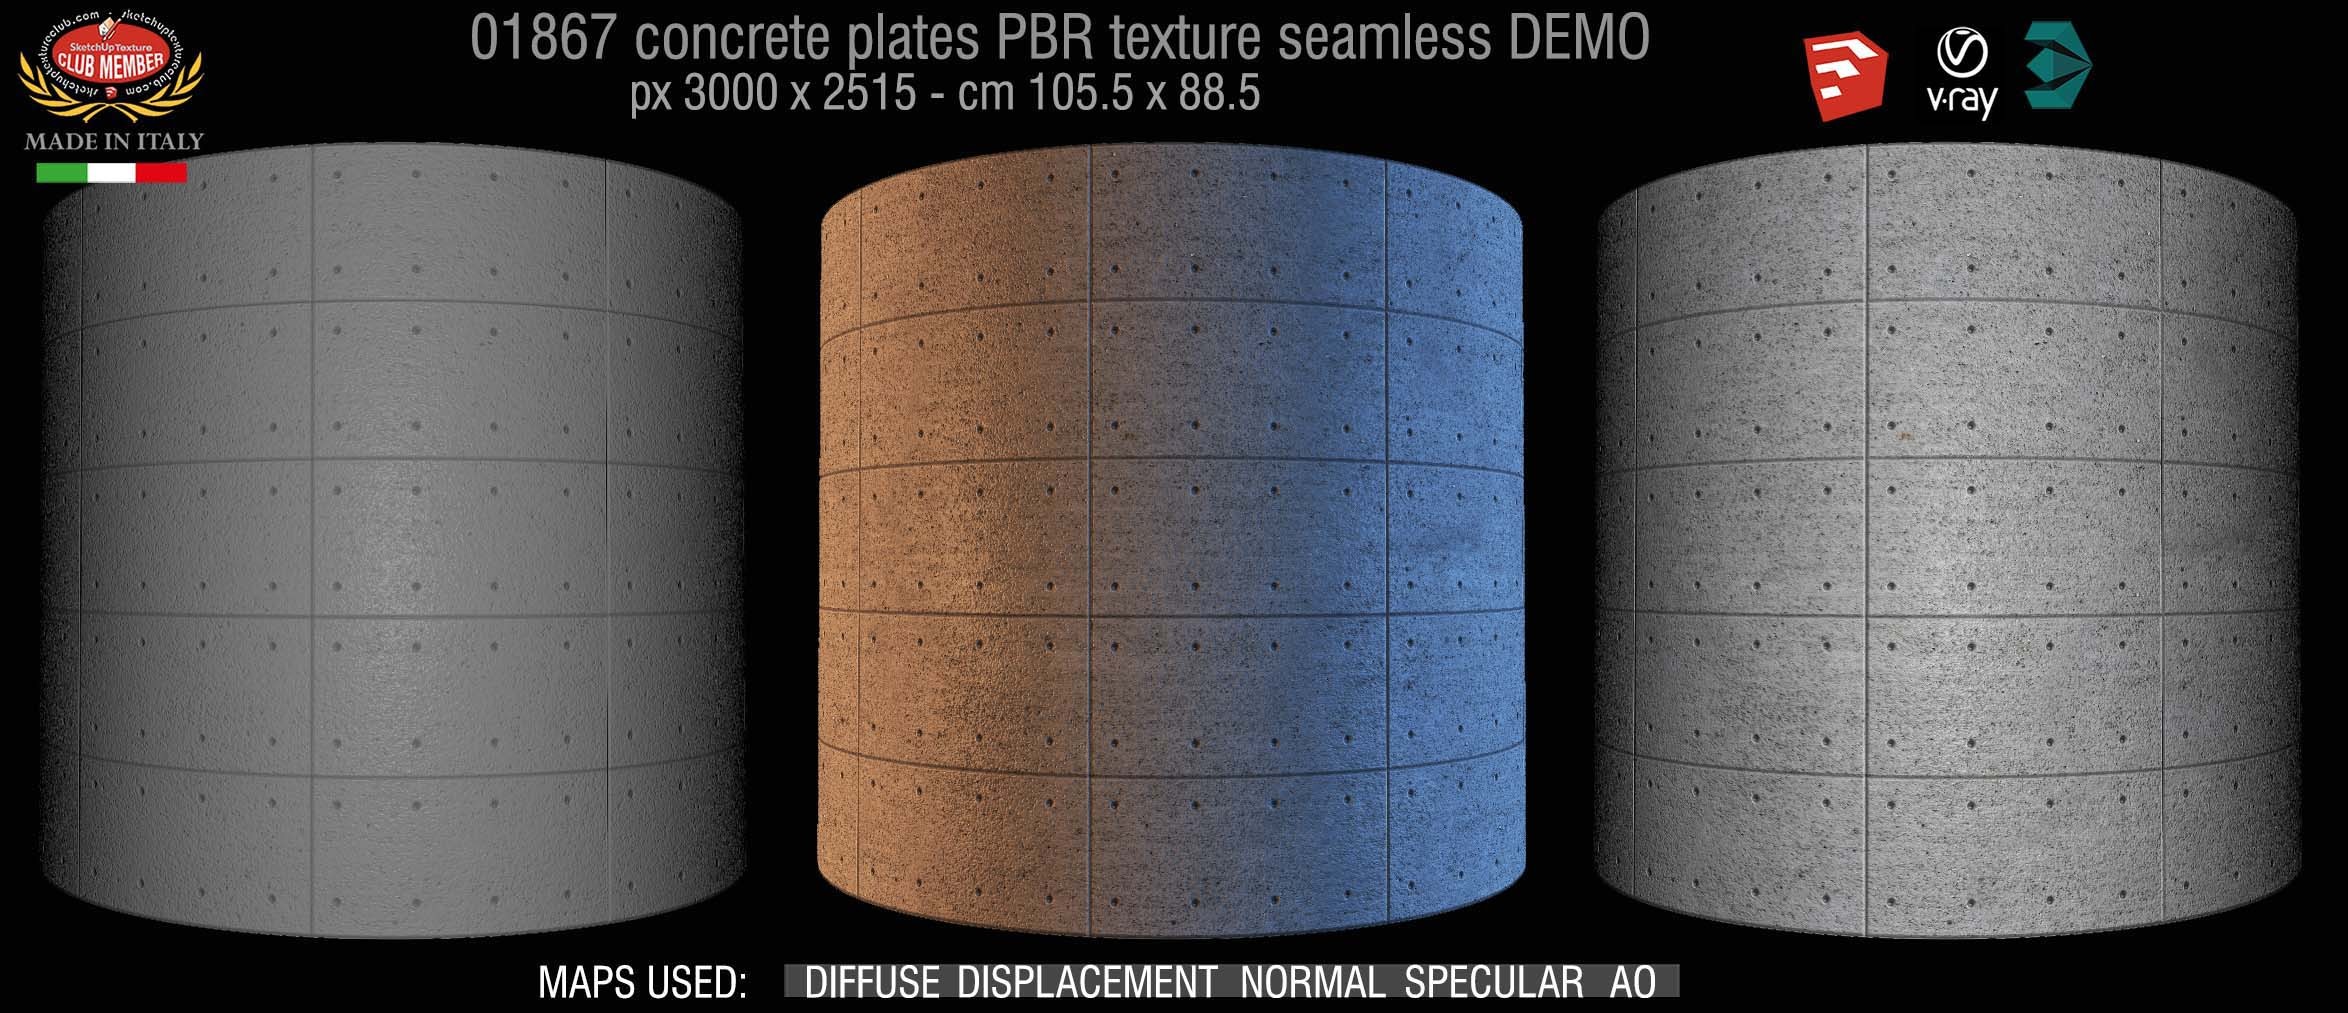 01867 Tadao Ando concrete plates PBR texture seamless DEMO